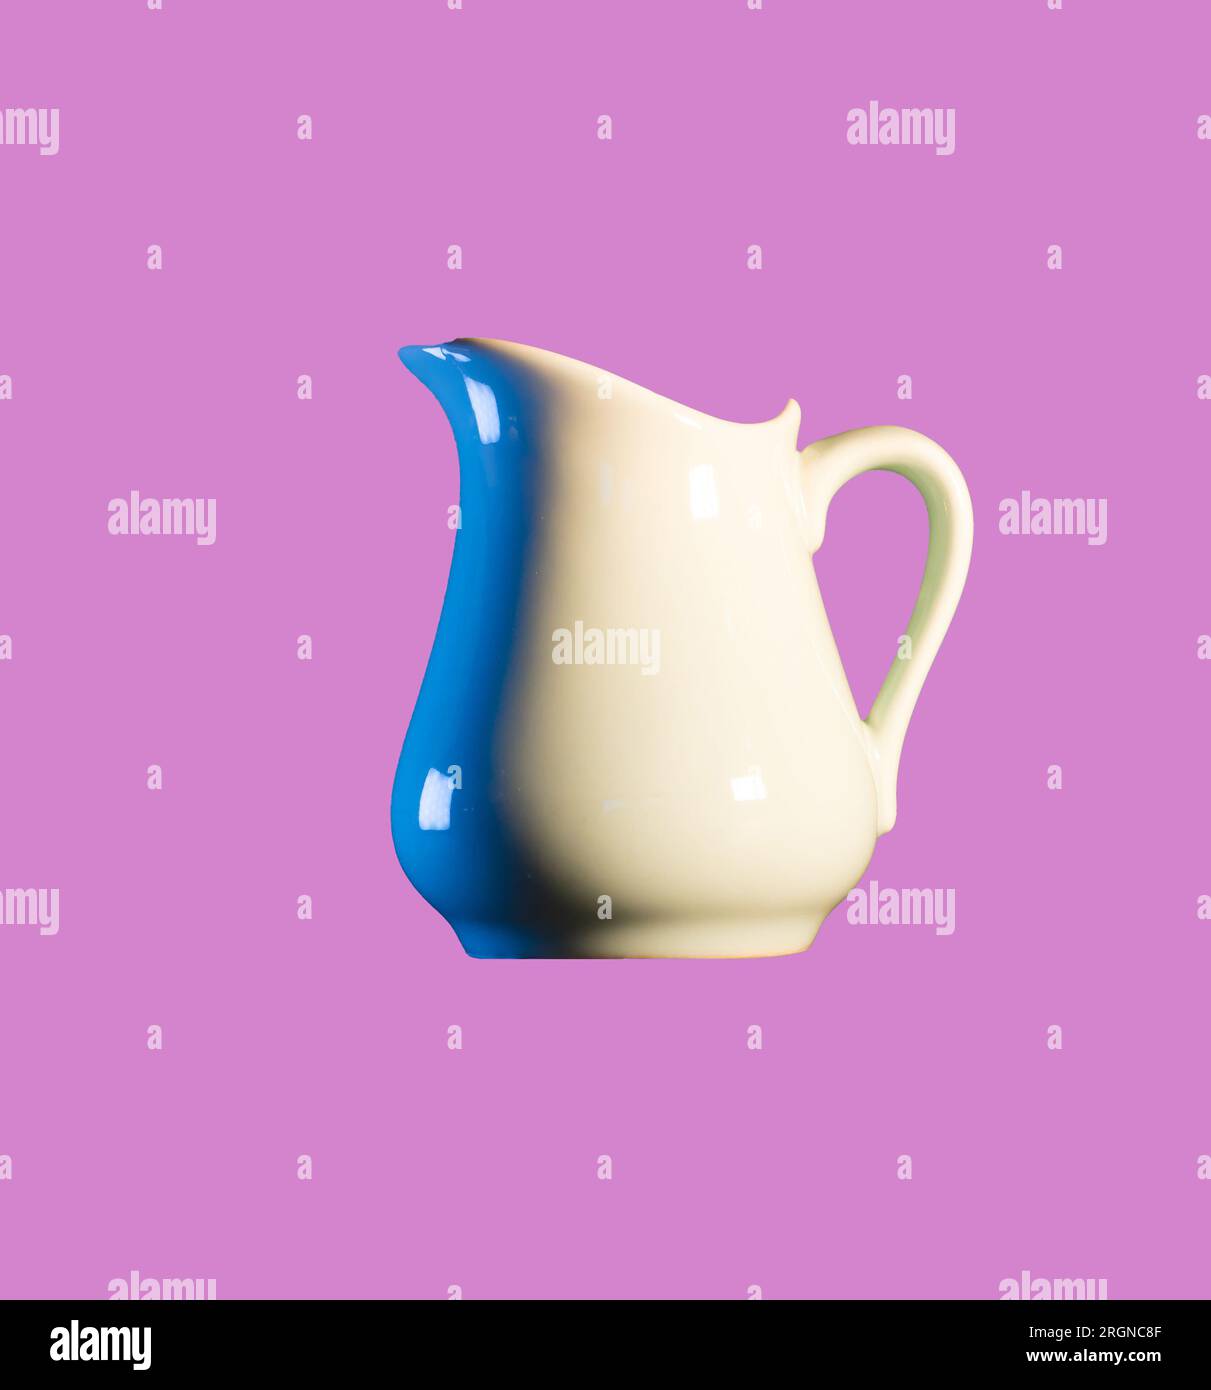 Ein weißer Keramik-Milchkrug, der blaues Licht reflektiert, isoliert auf pinkfarbenem Hintergrund Stockfoto